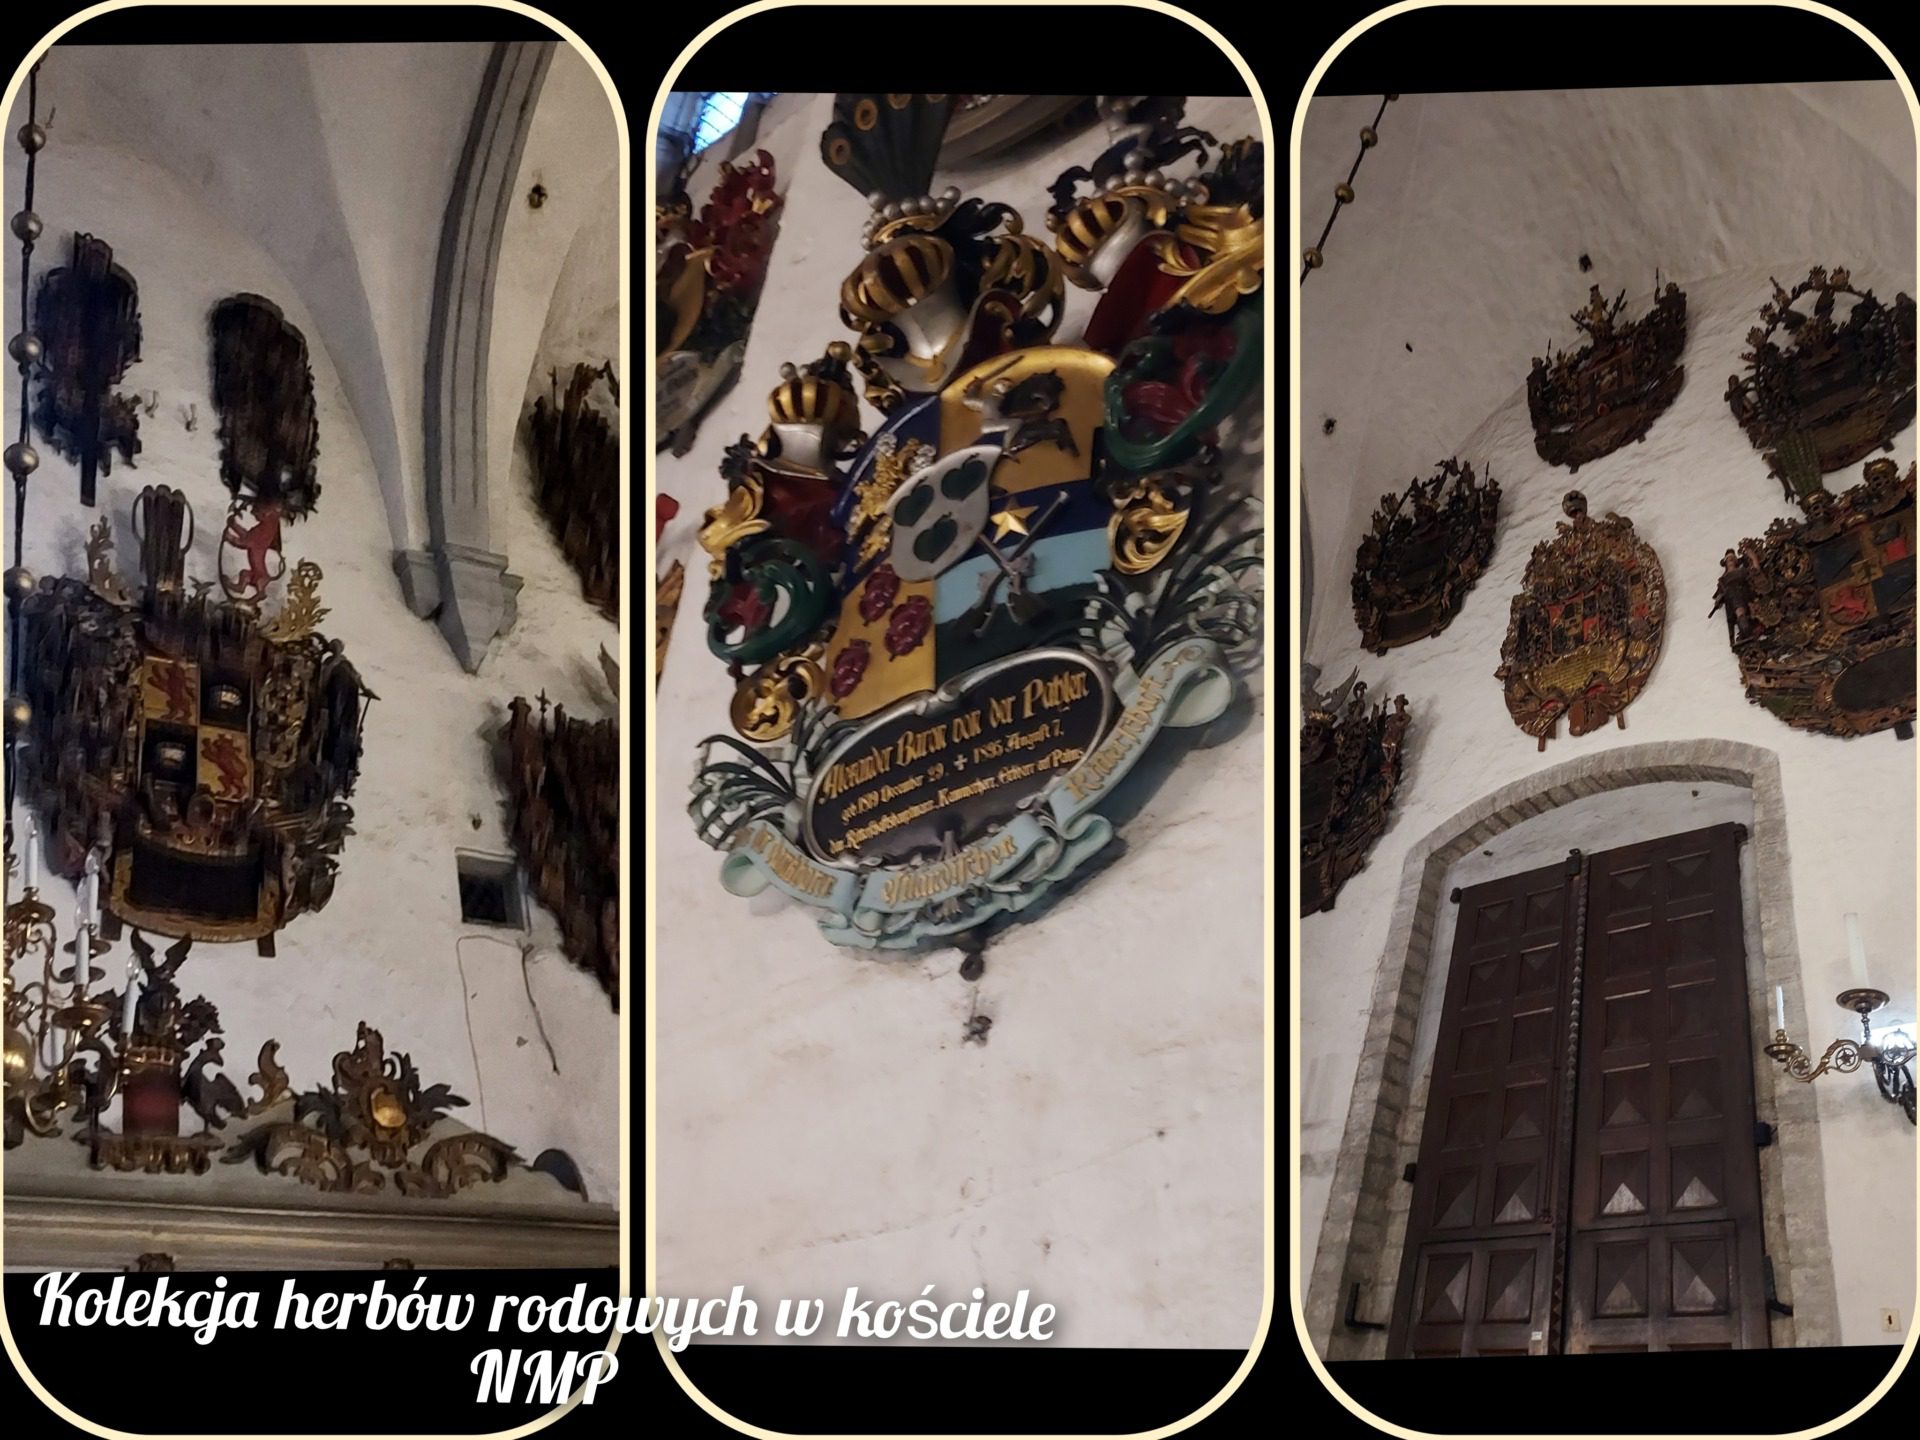 Kolekcja herbów rodowych w kościele NMP, fot. Angelika Grobelna